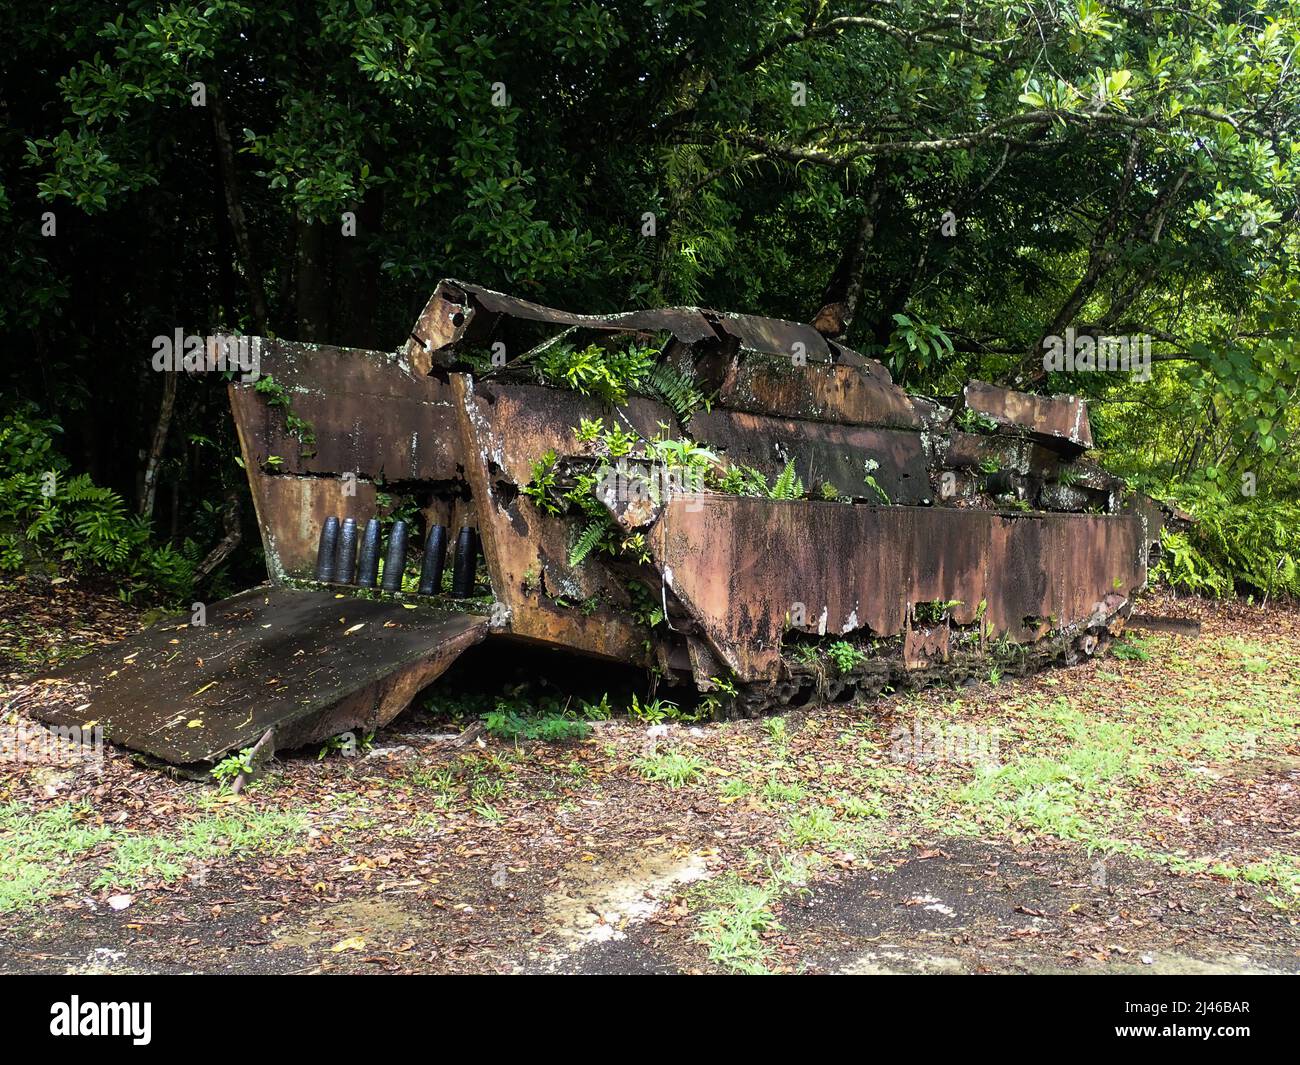 WW2 landing craft from battle of Peleliu, Palau Stock Photo